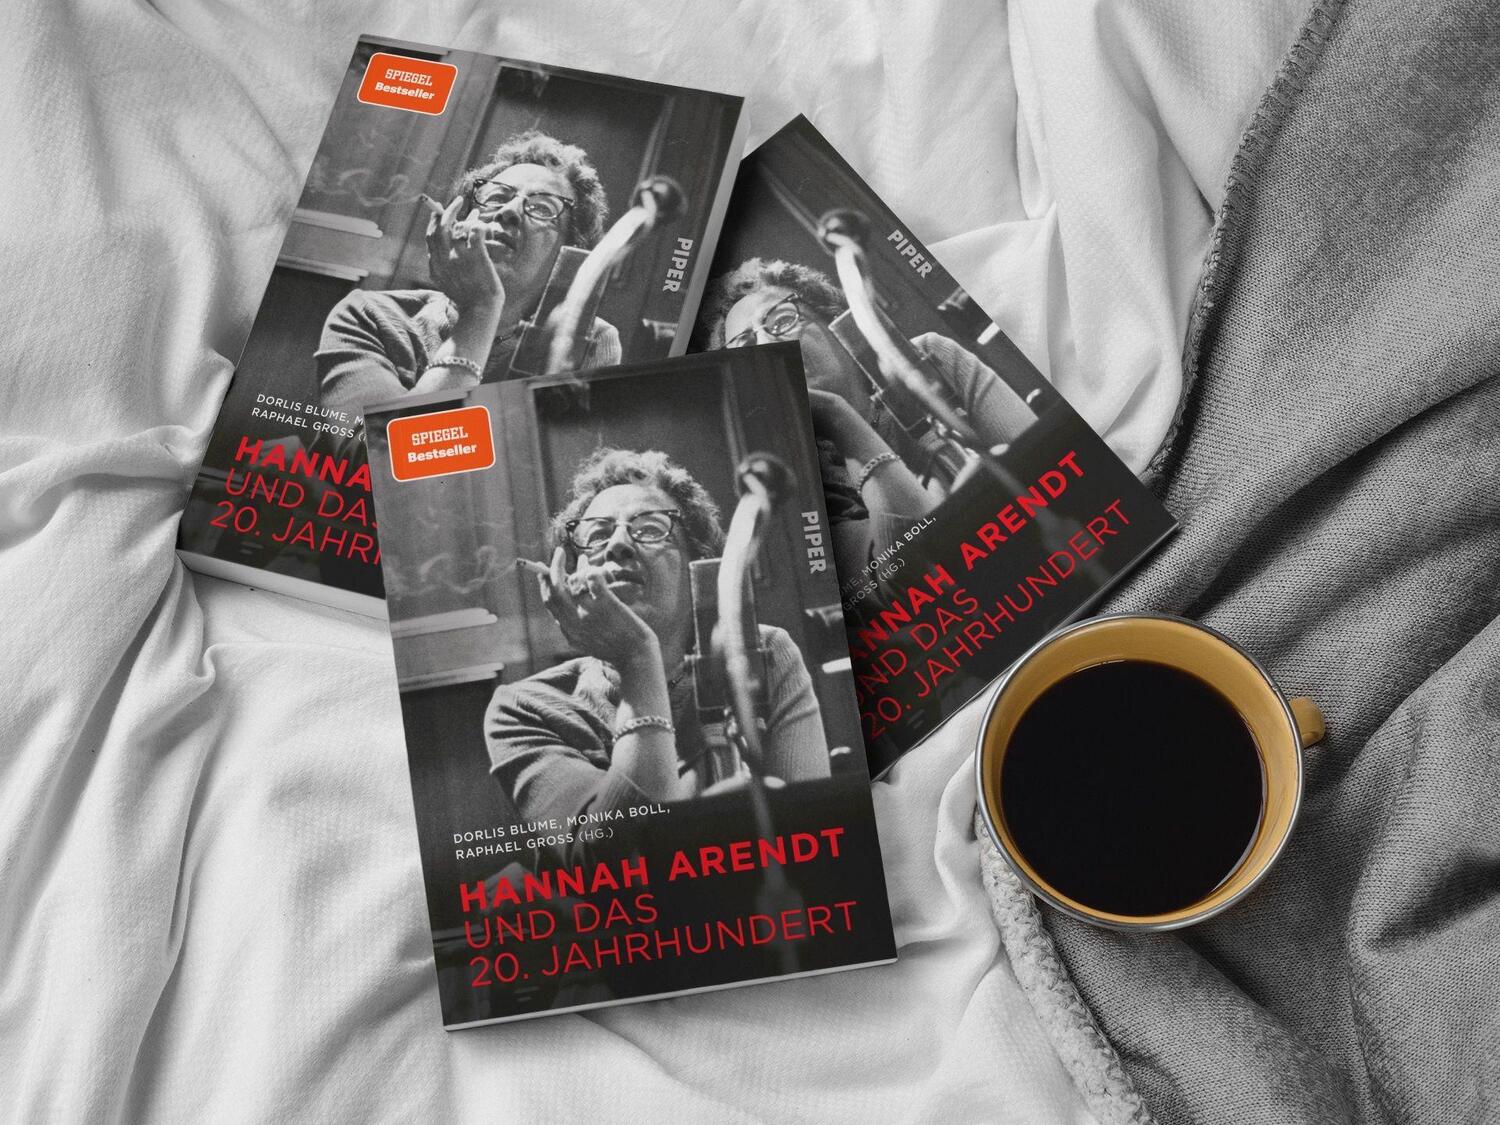 Bild: 9783492070355 | Hannah Arendt und das 20. Jahrhundert | Monika Boll (u. a.) | Buch